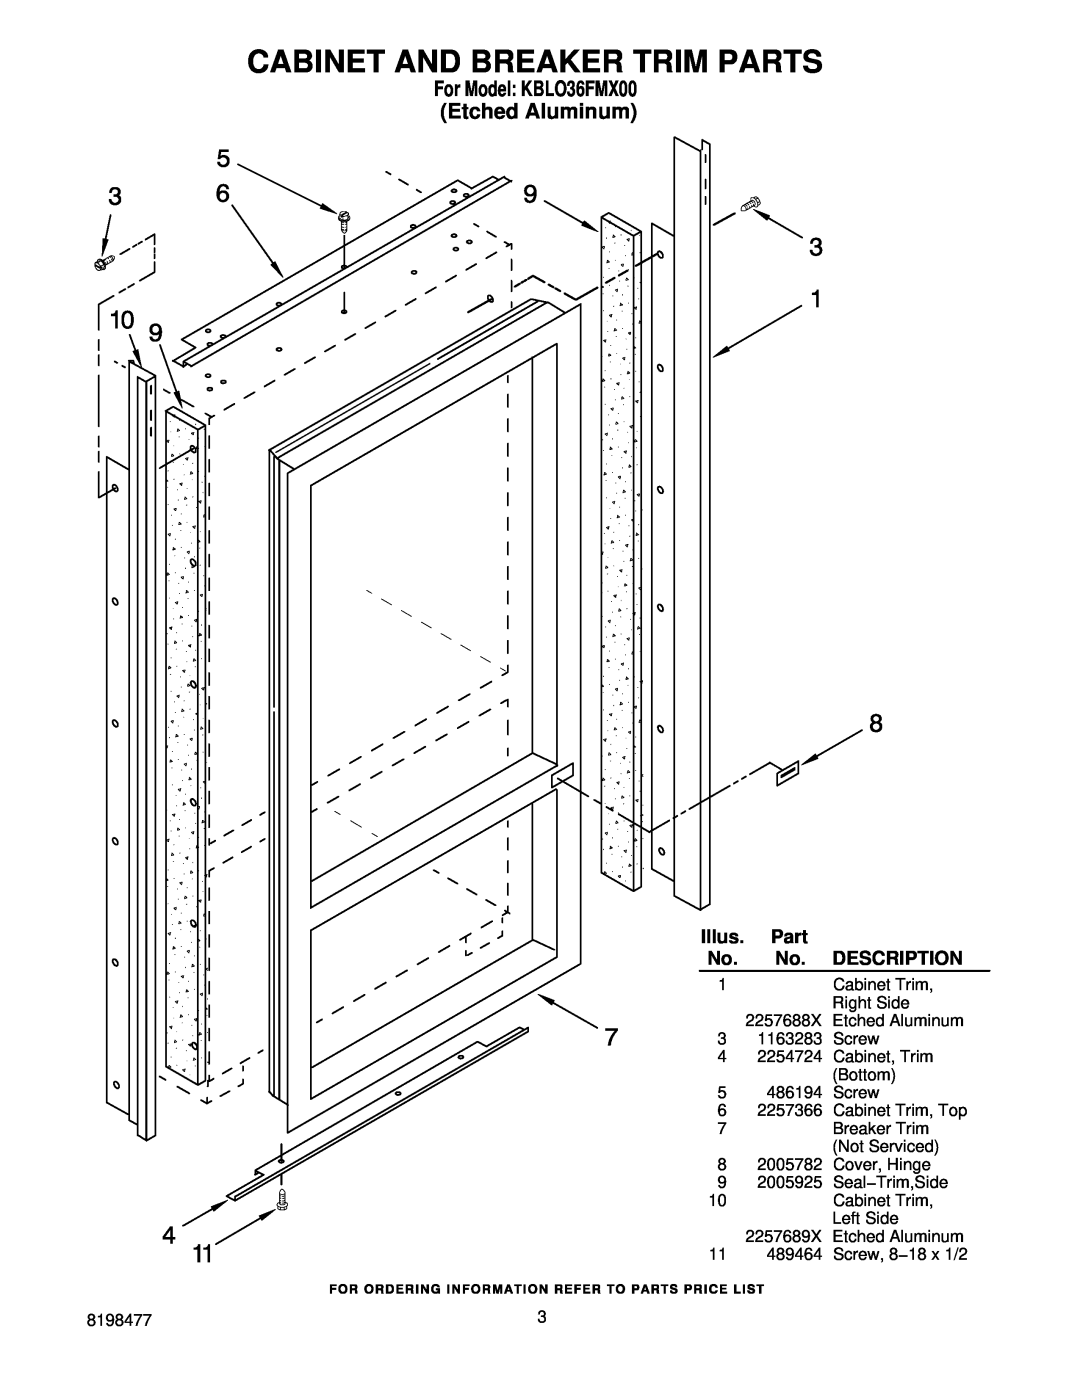 KitchenAid manual Cabinet And Breaker Trim Parts, For Model KBLO36FMX00 Etched Aluminum, Illus, Description 